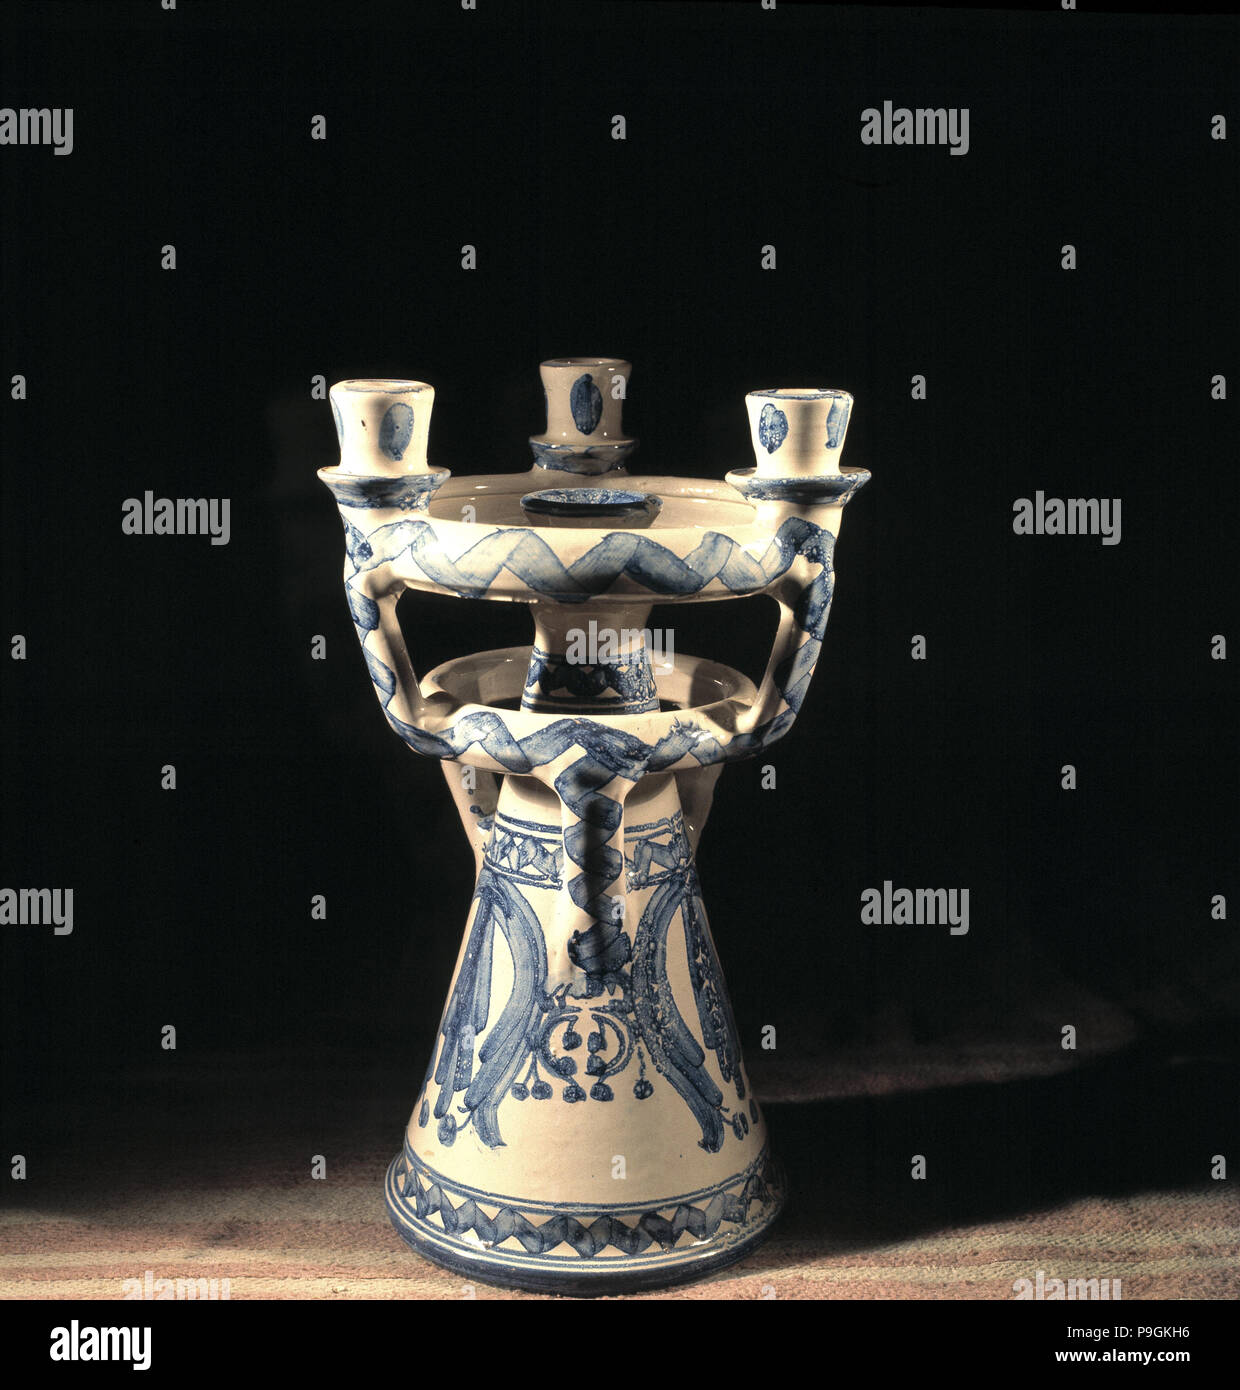 Muel candelabri in ceramica, workshop di recupero di antiche botteghe di ceramisti del XV e XVI secolo. Foto Stock